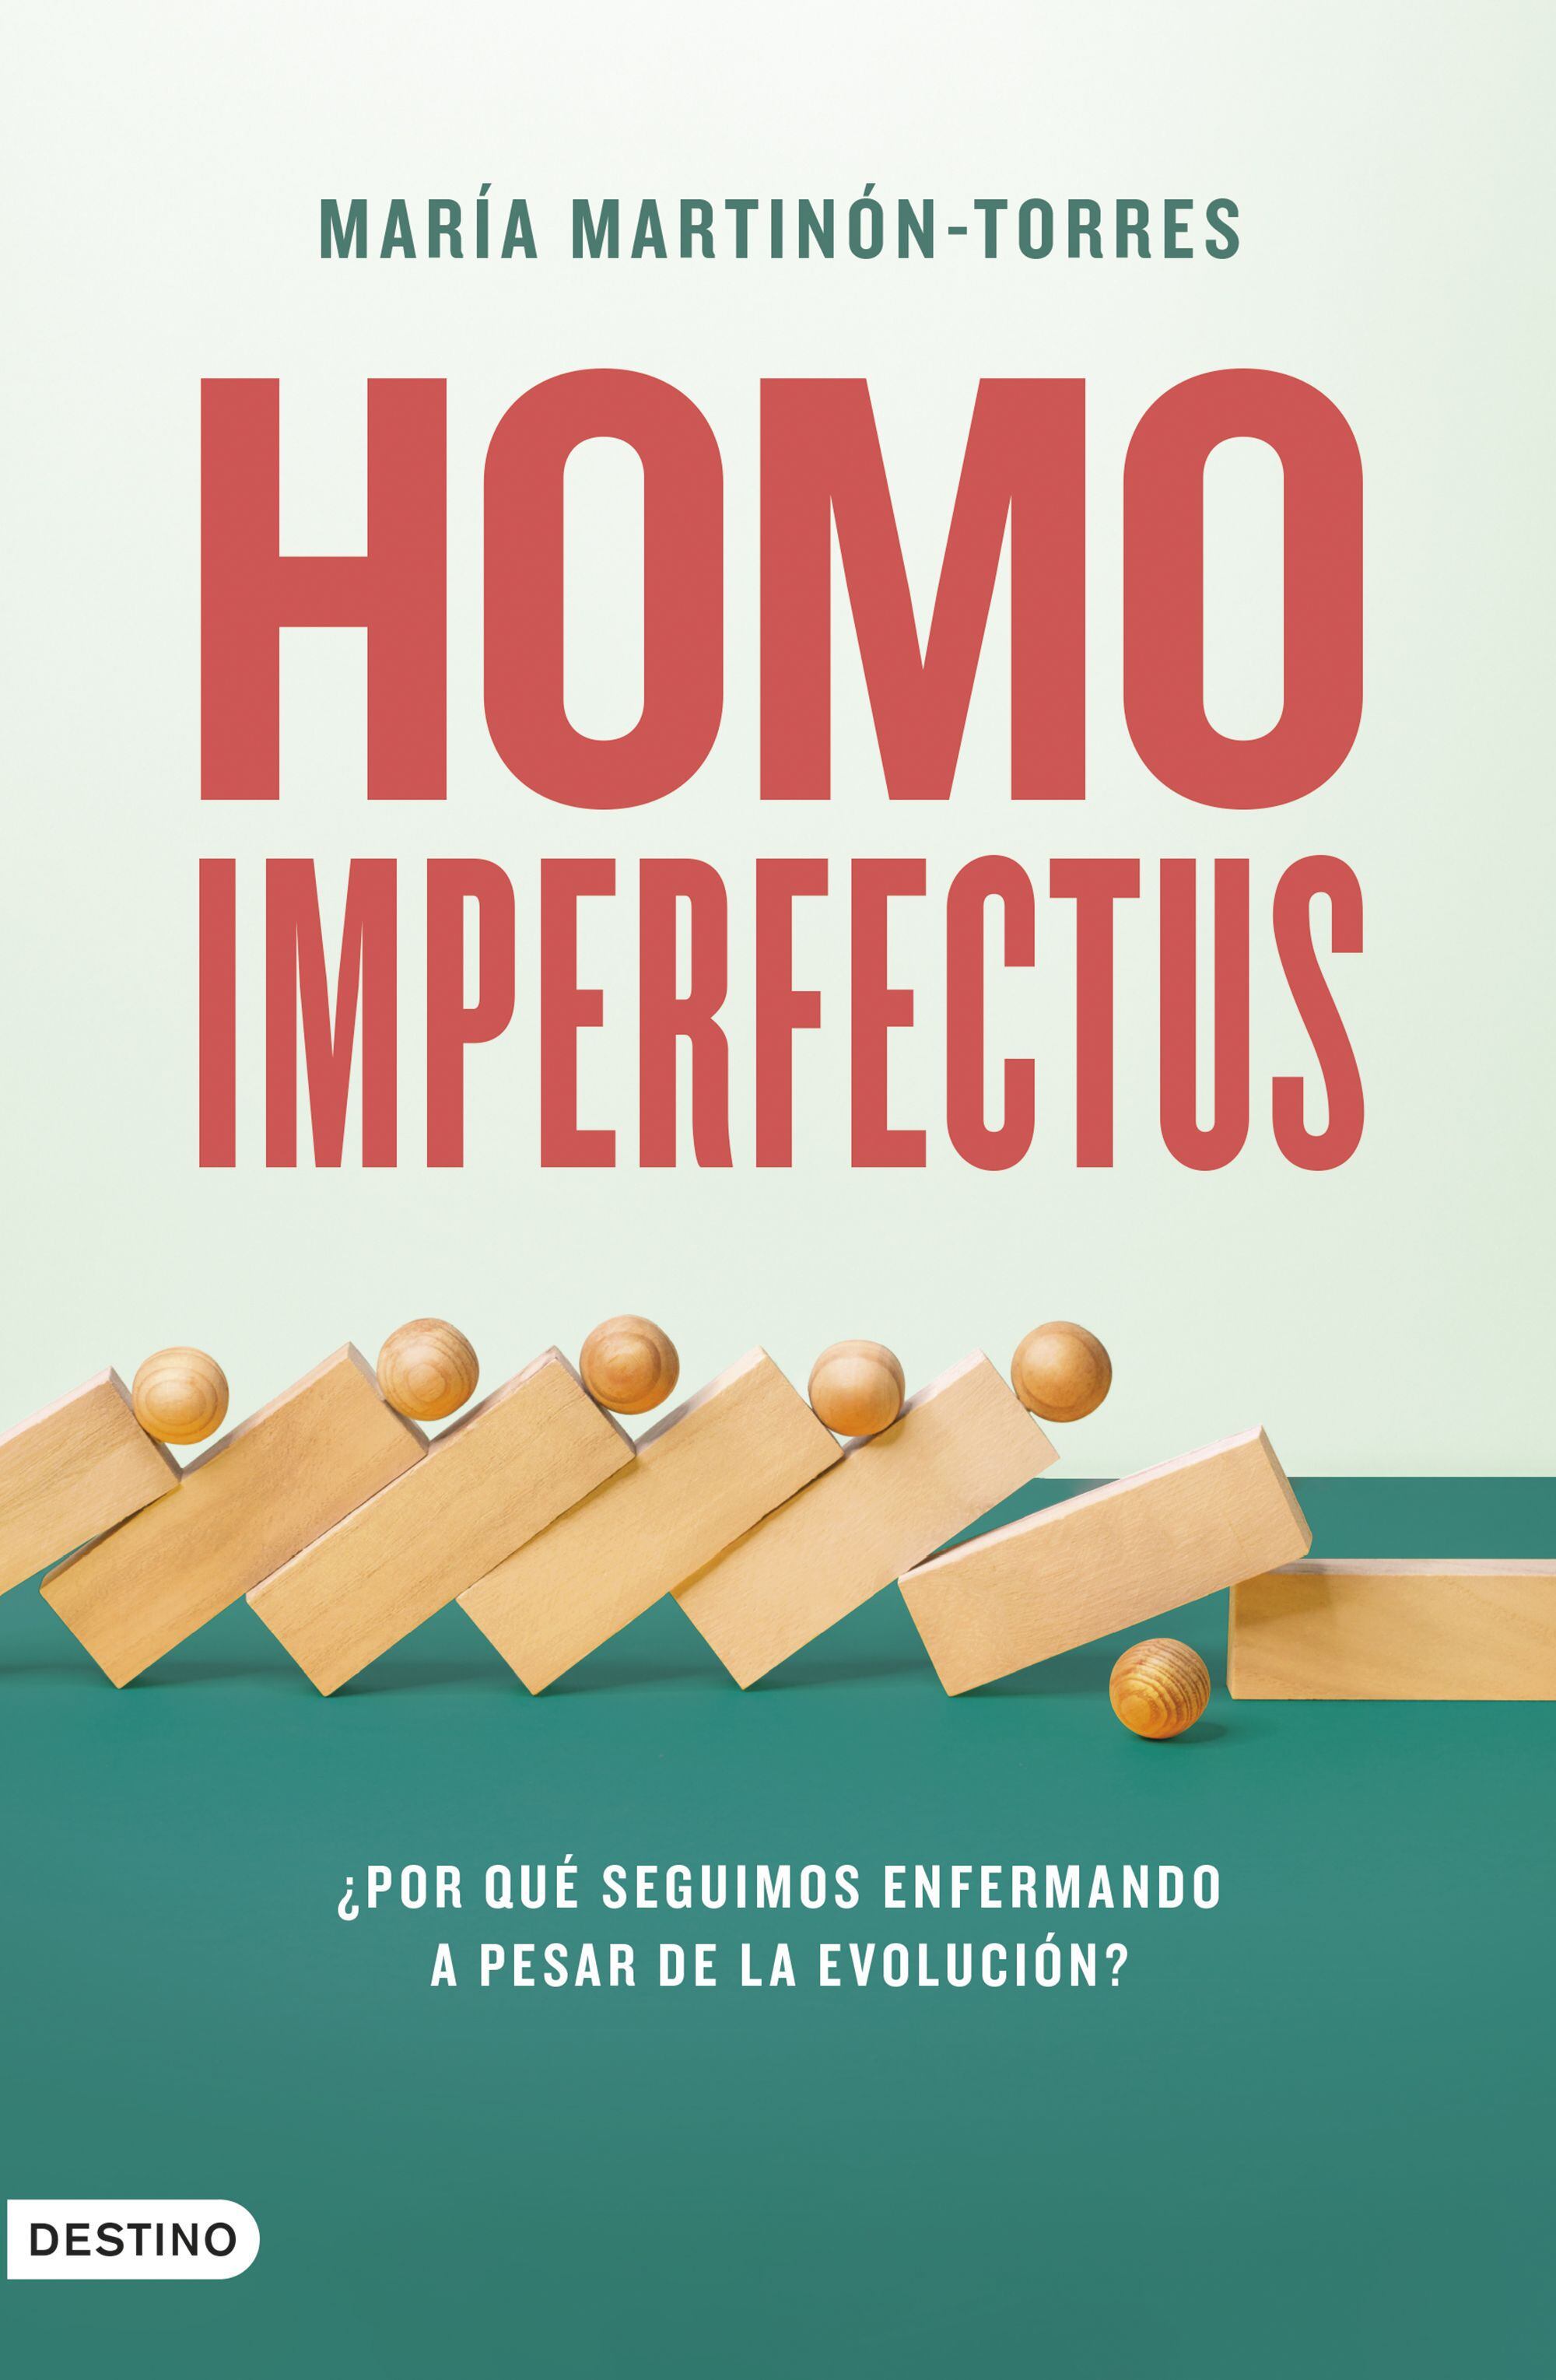 Portada del libro 'Homo imperfectus', de María Martinón-Torres.